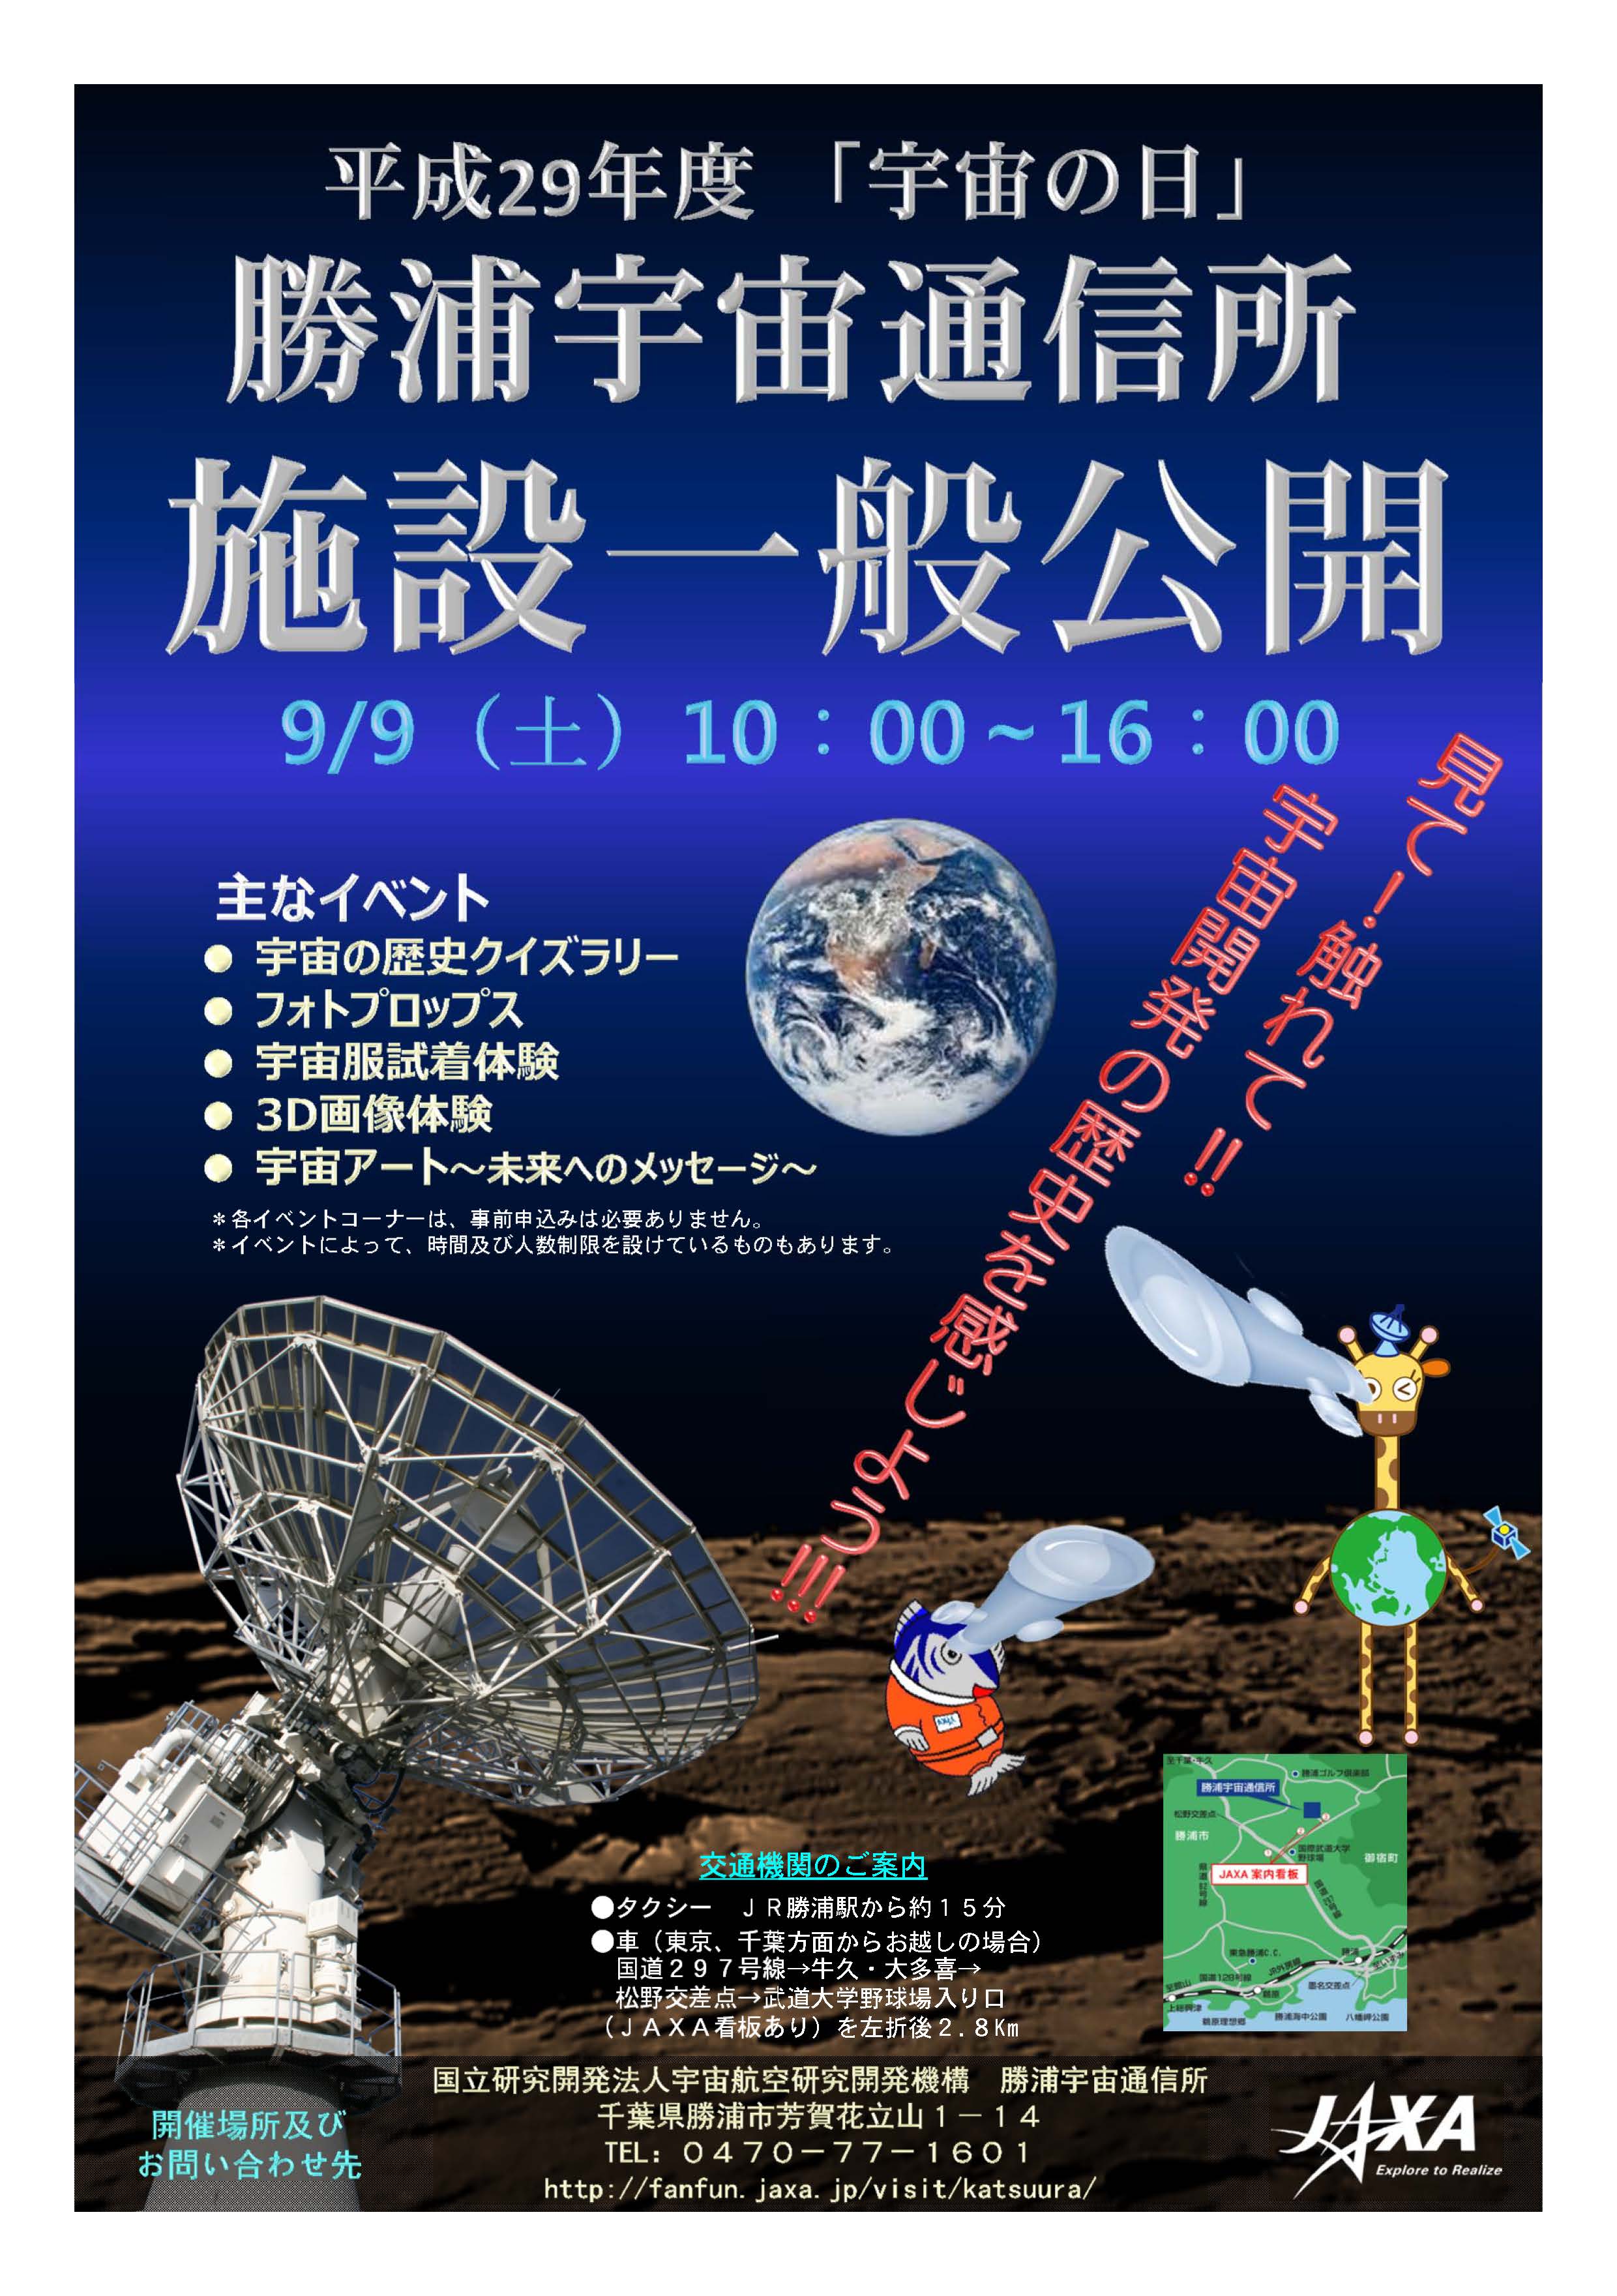 「宇宙の日」勝浦宇宙通信所　施設一般公開のお知らせ